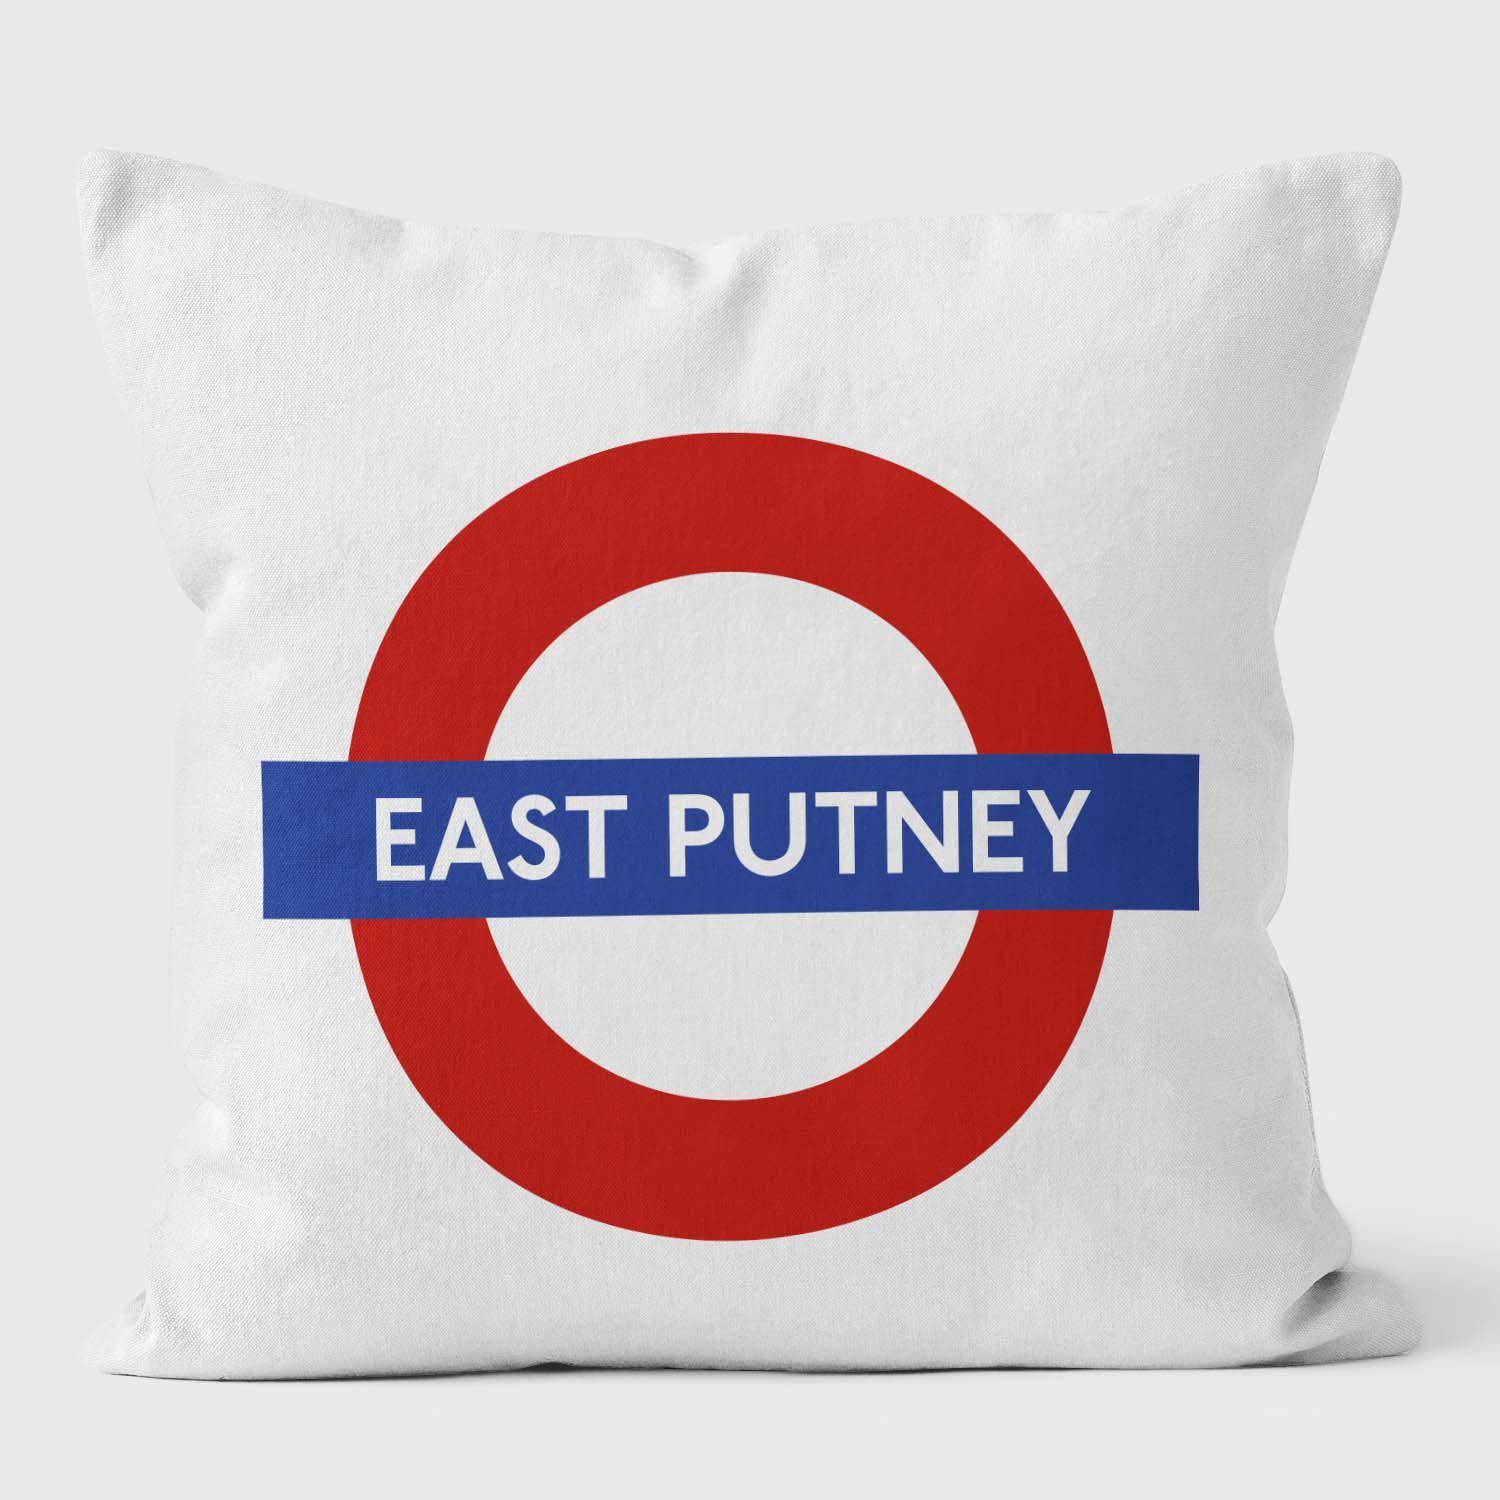 East Putney London Underground Tube Station Roundel Cushion - Handmade Cushions UK - WeLoveCushions